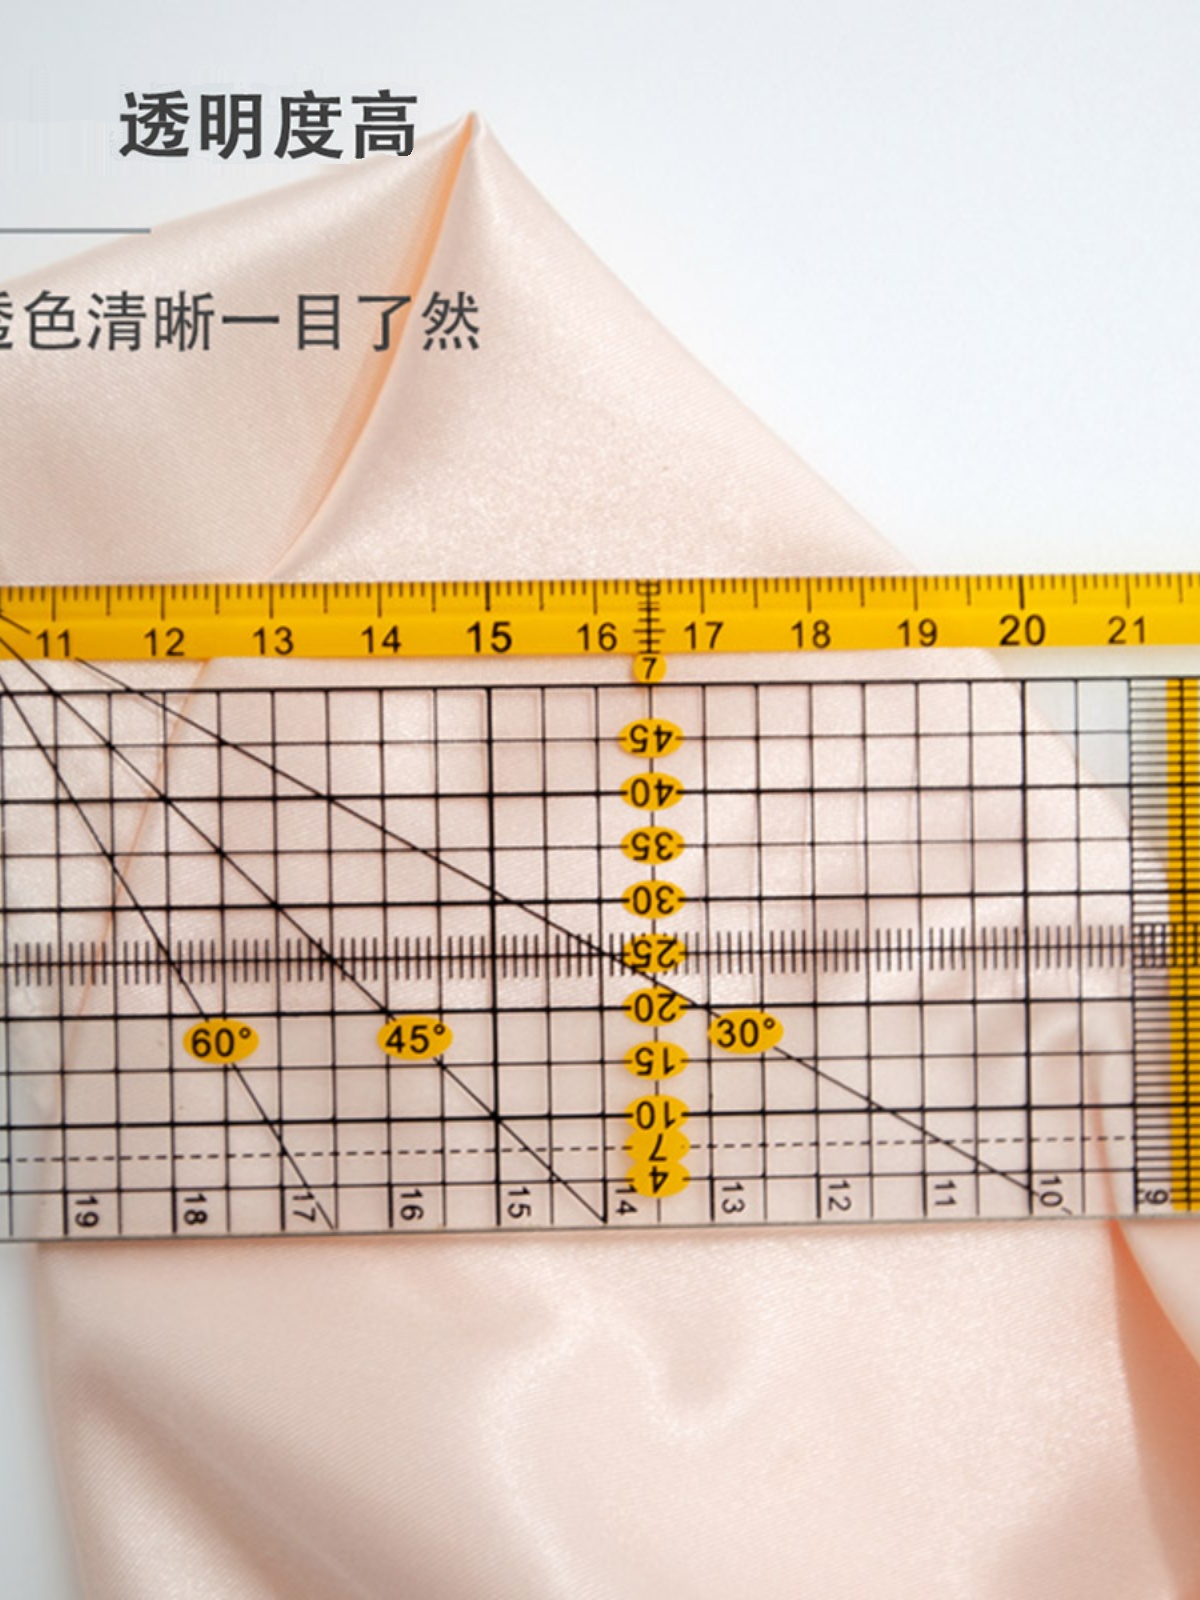 科灵双色拼布专用尺切割尺 服装设计裁剪缝份直尺压线尺子工具 - 图2